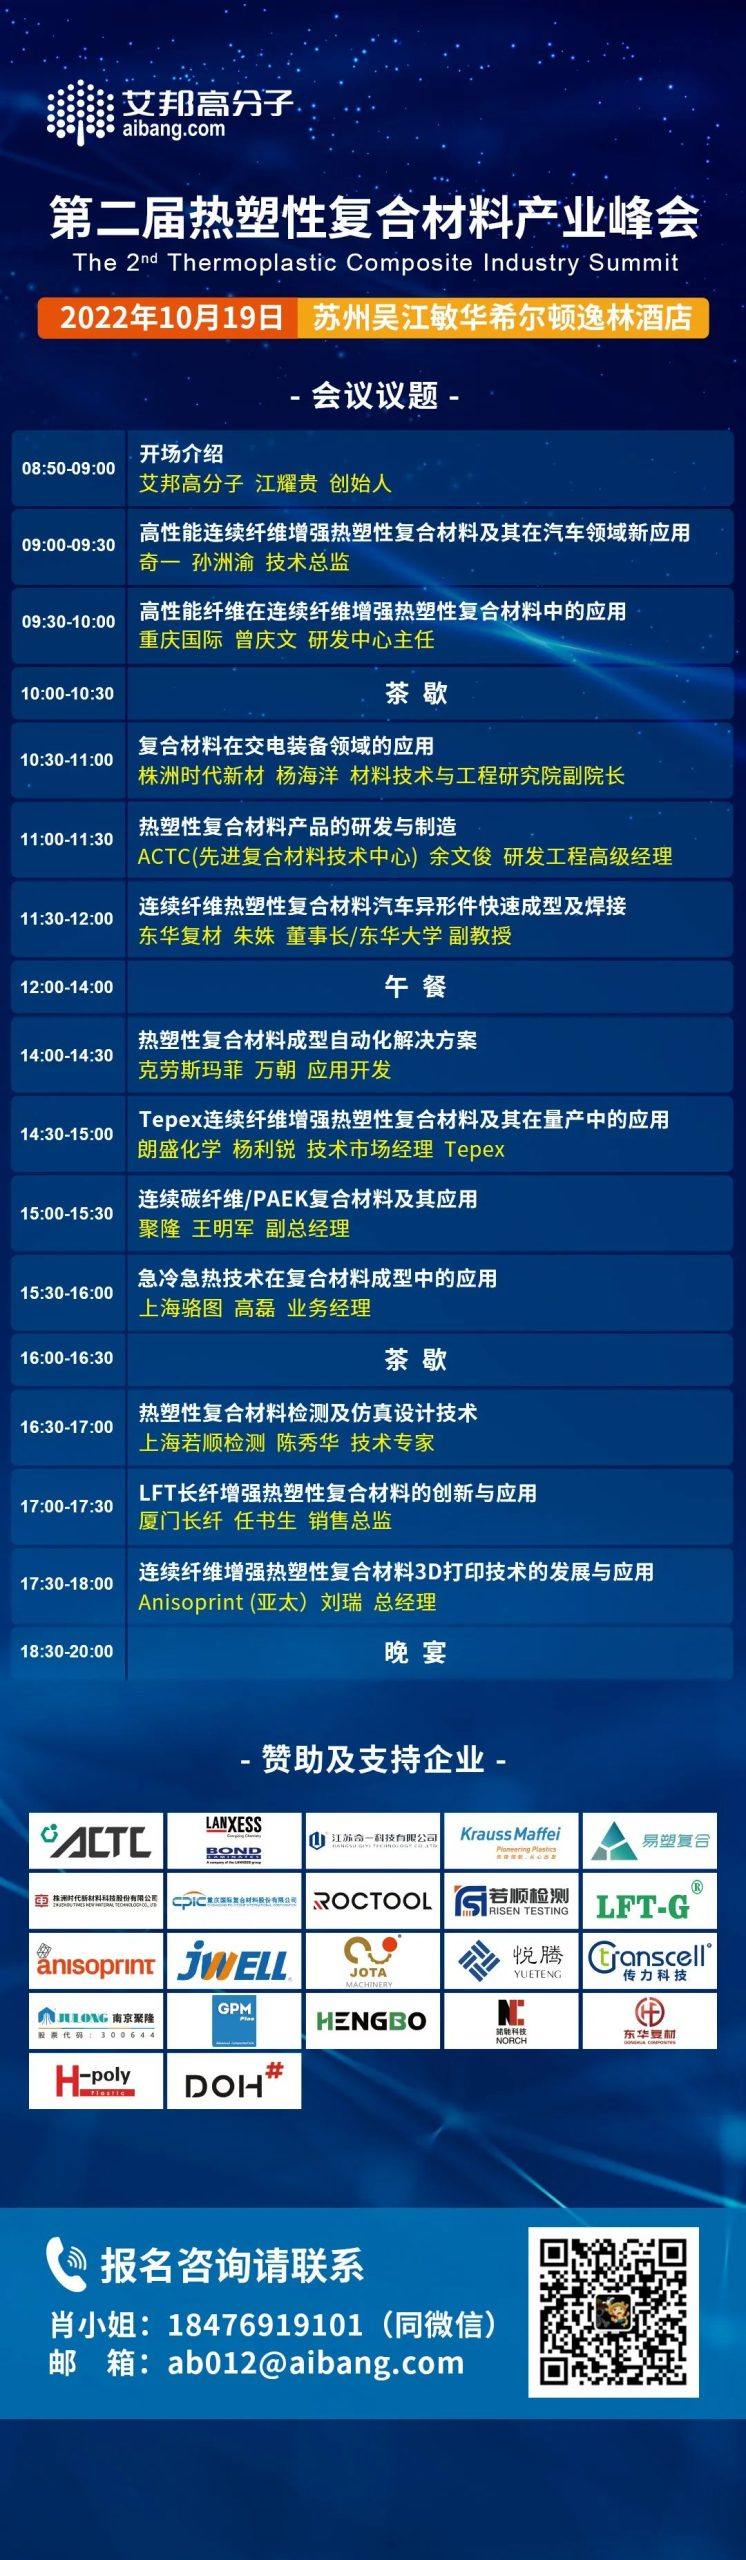 重庆国际将出席第二届热塑性复合材料产业峰会并做主题演讲